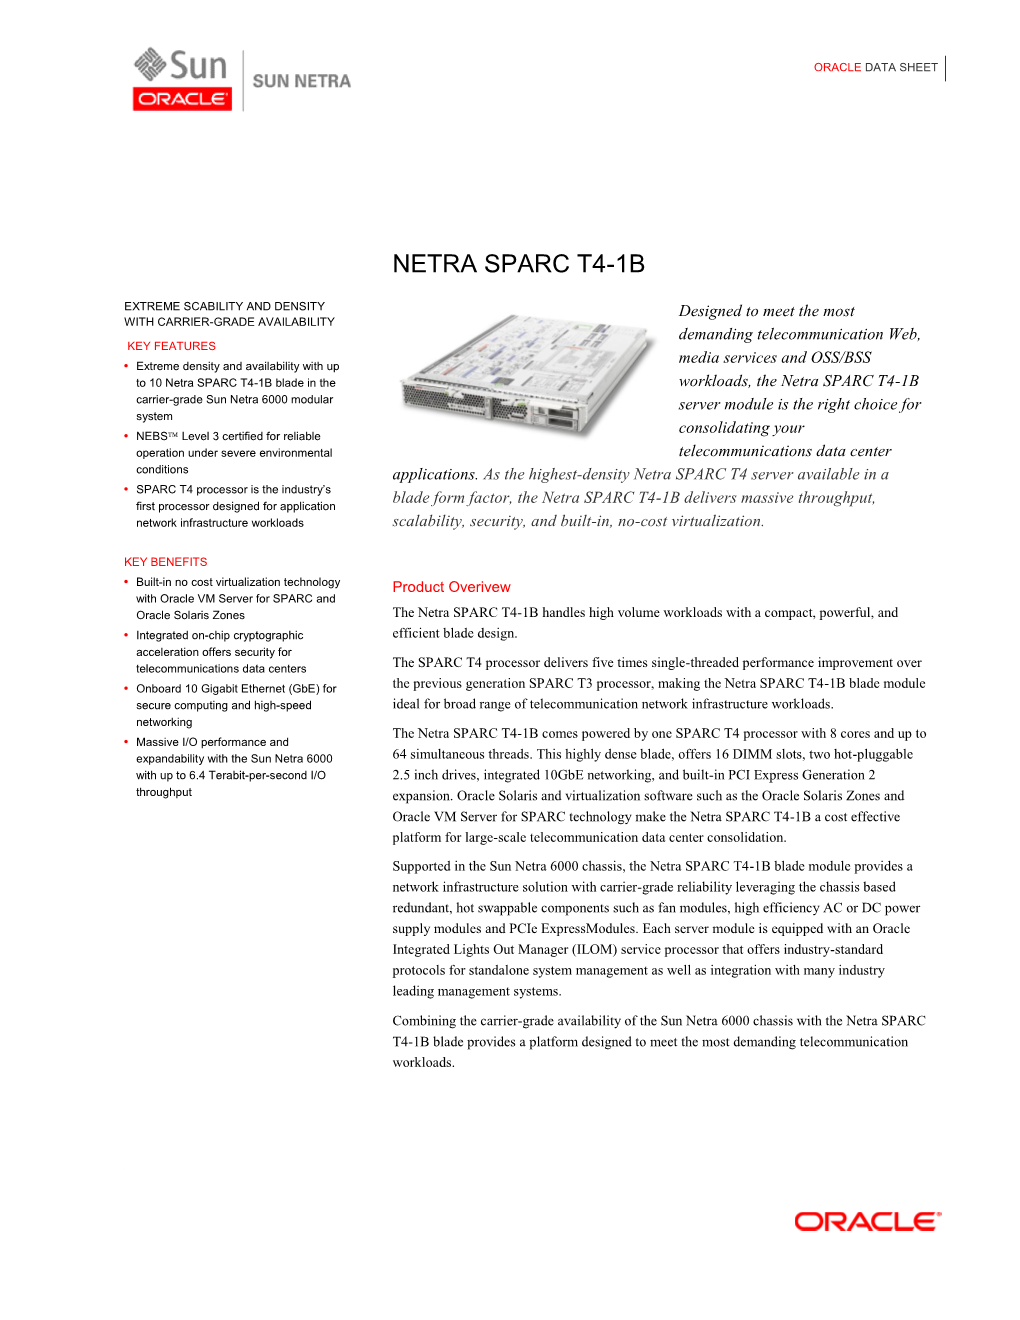 Netra SPARC T4-1B Data Sheet Data Sheet